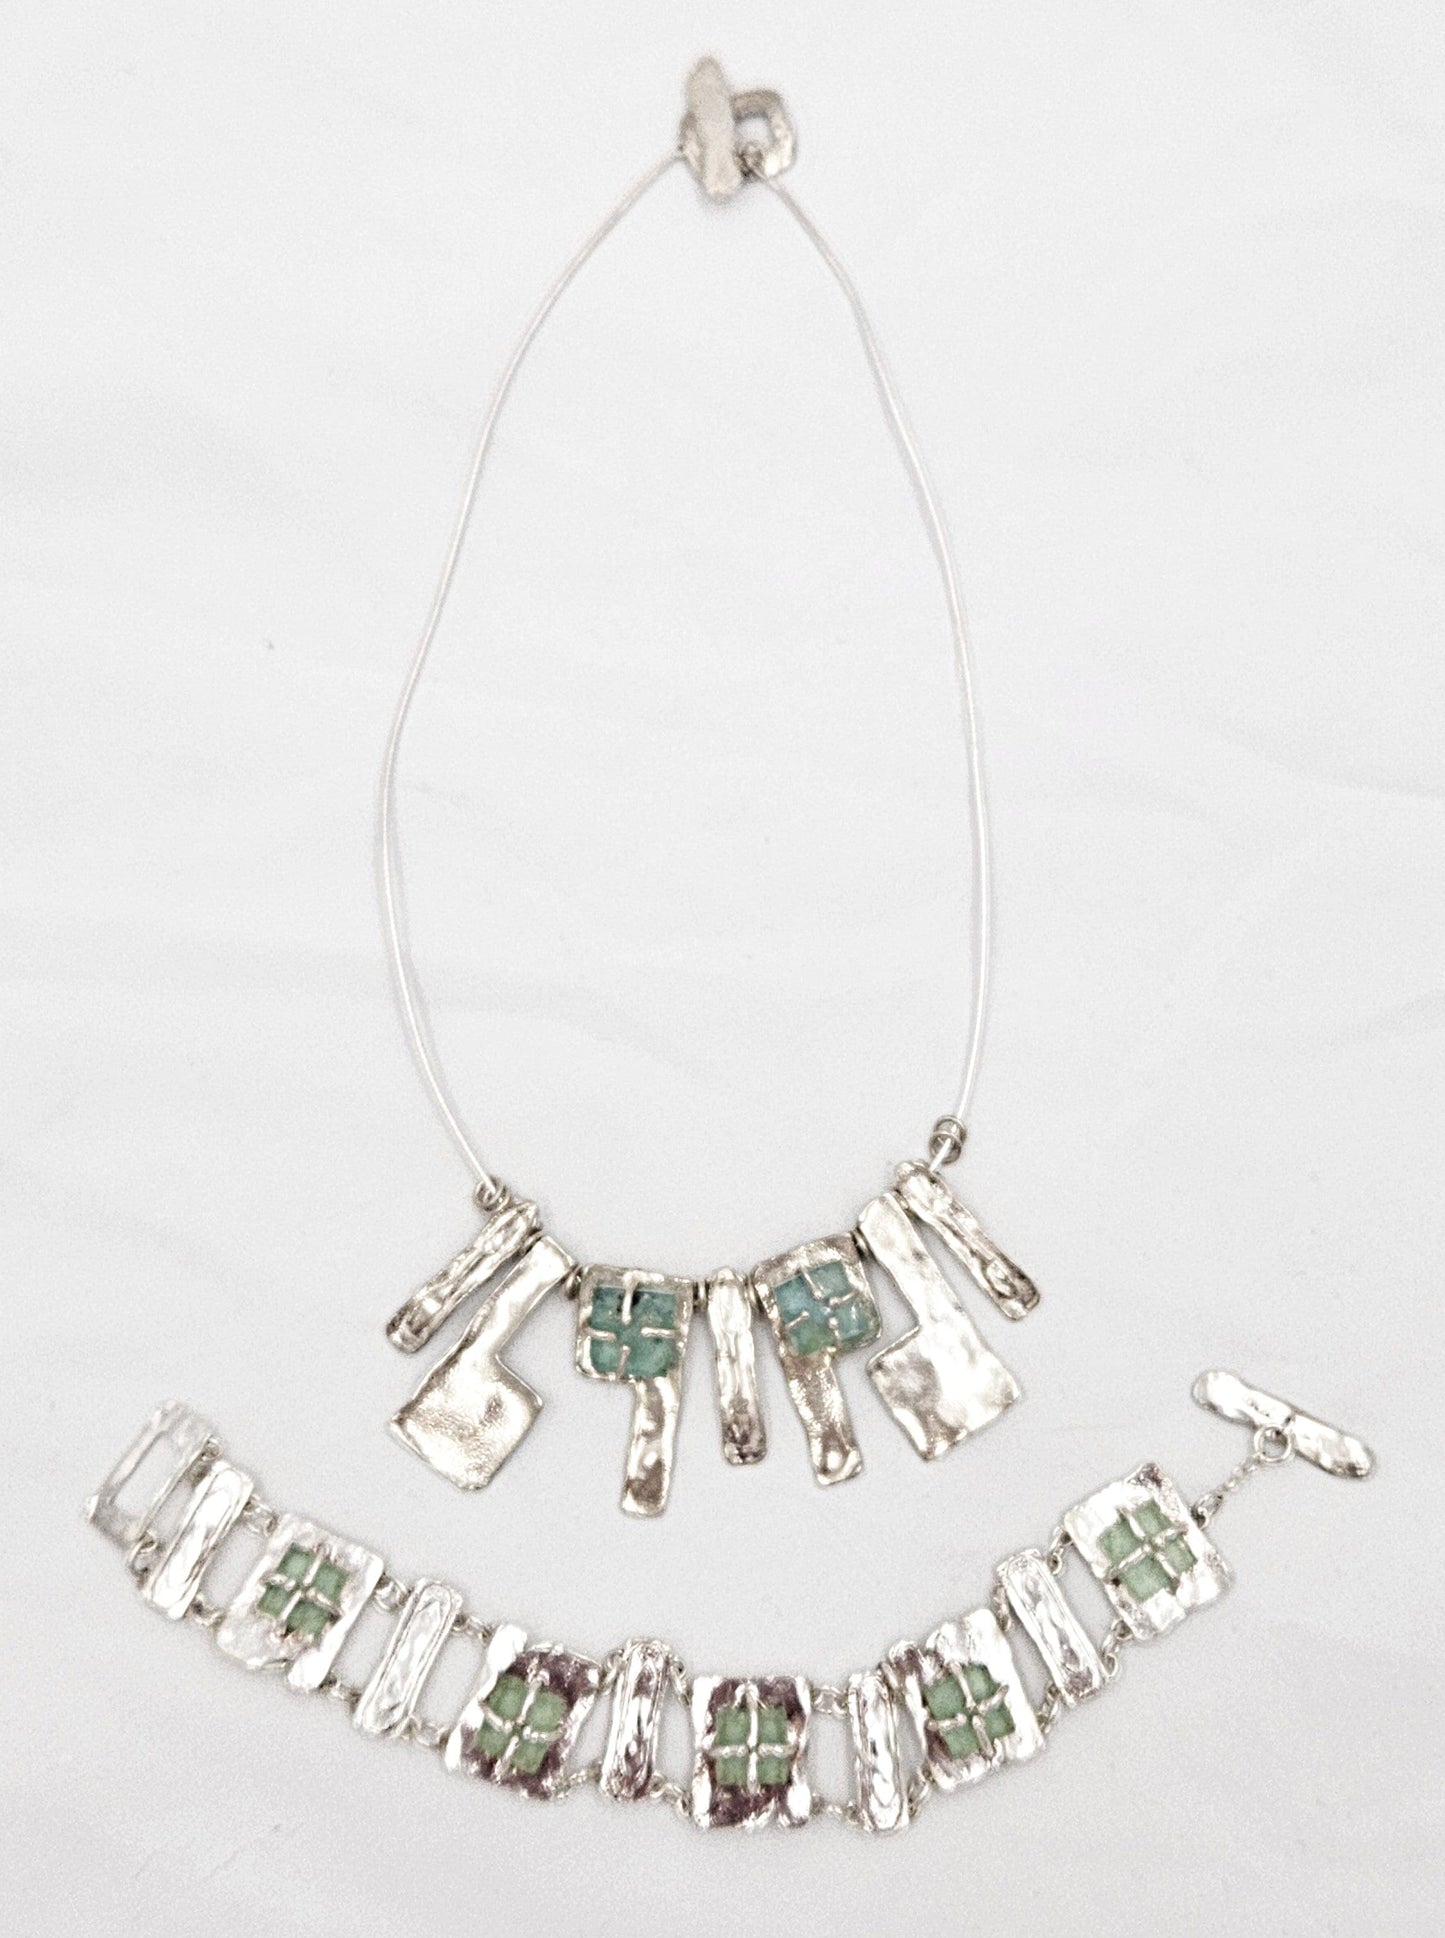 Luli Hammerstein Jewelry Luli Hammersztein Sterling Roman Glass Modernist Necklace & Bracelet Set 1980s